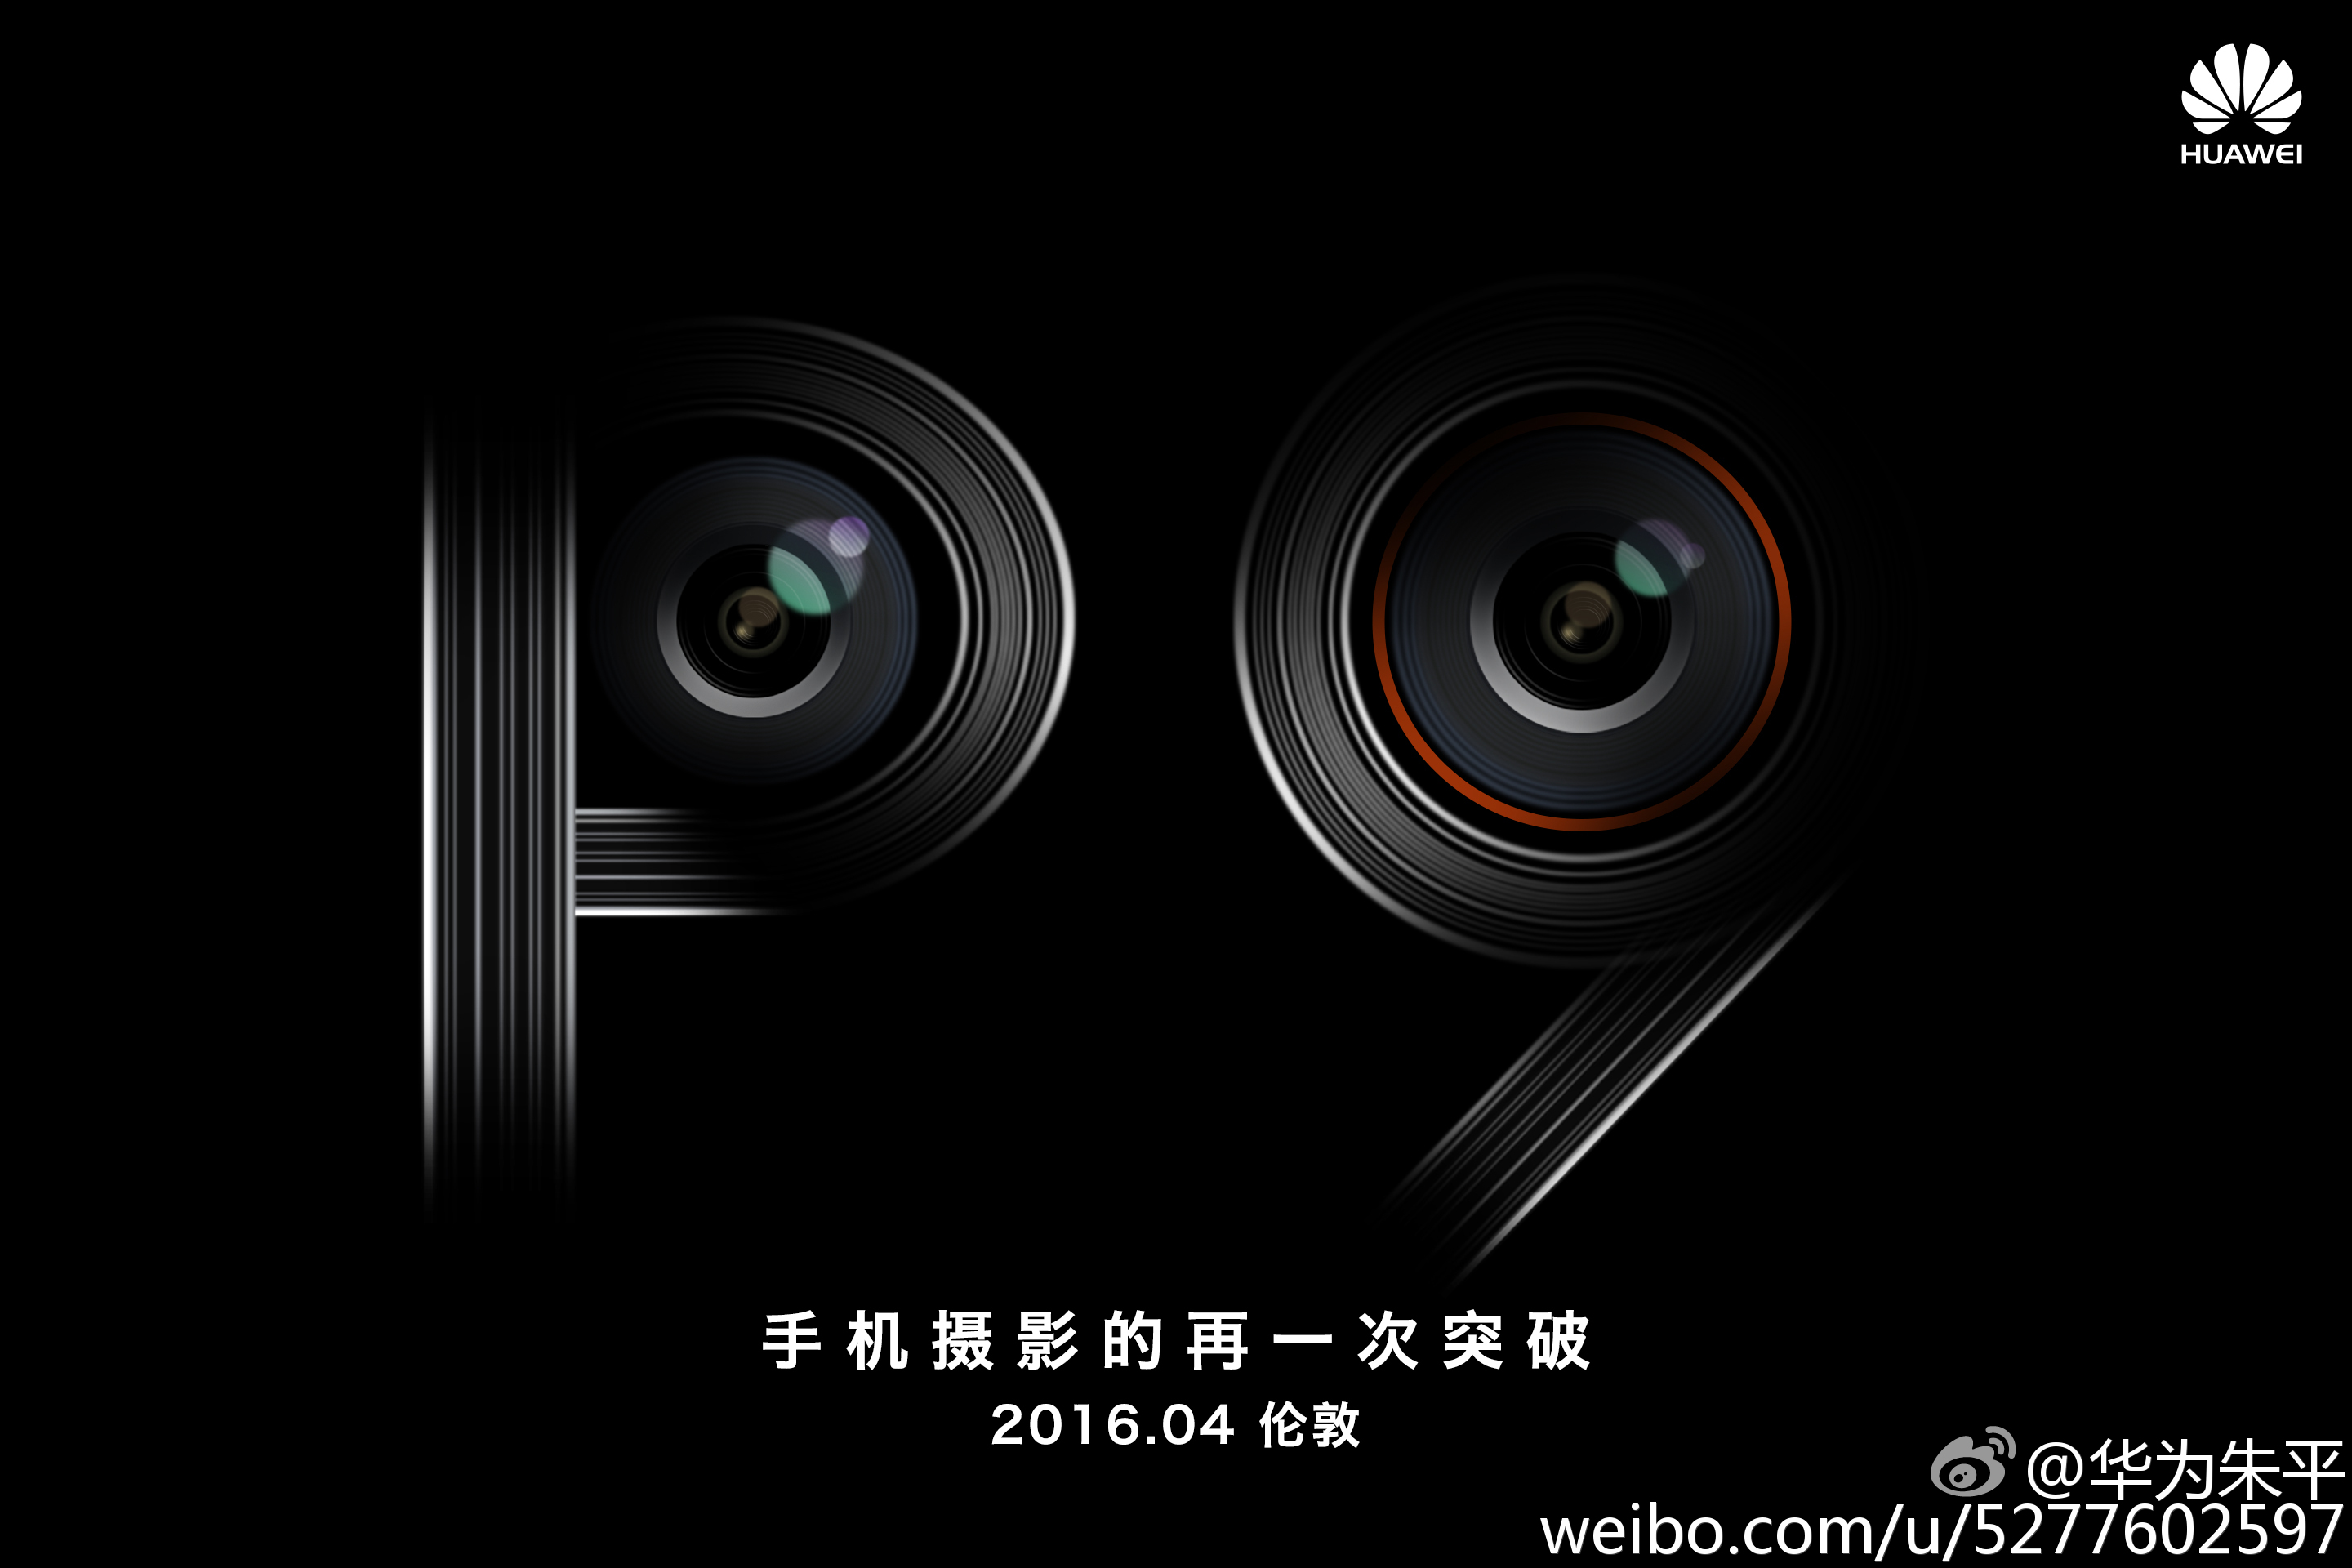 Huawei P9 Dual Camera teaser